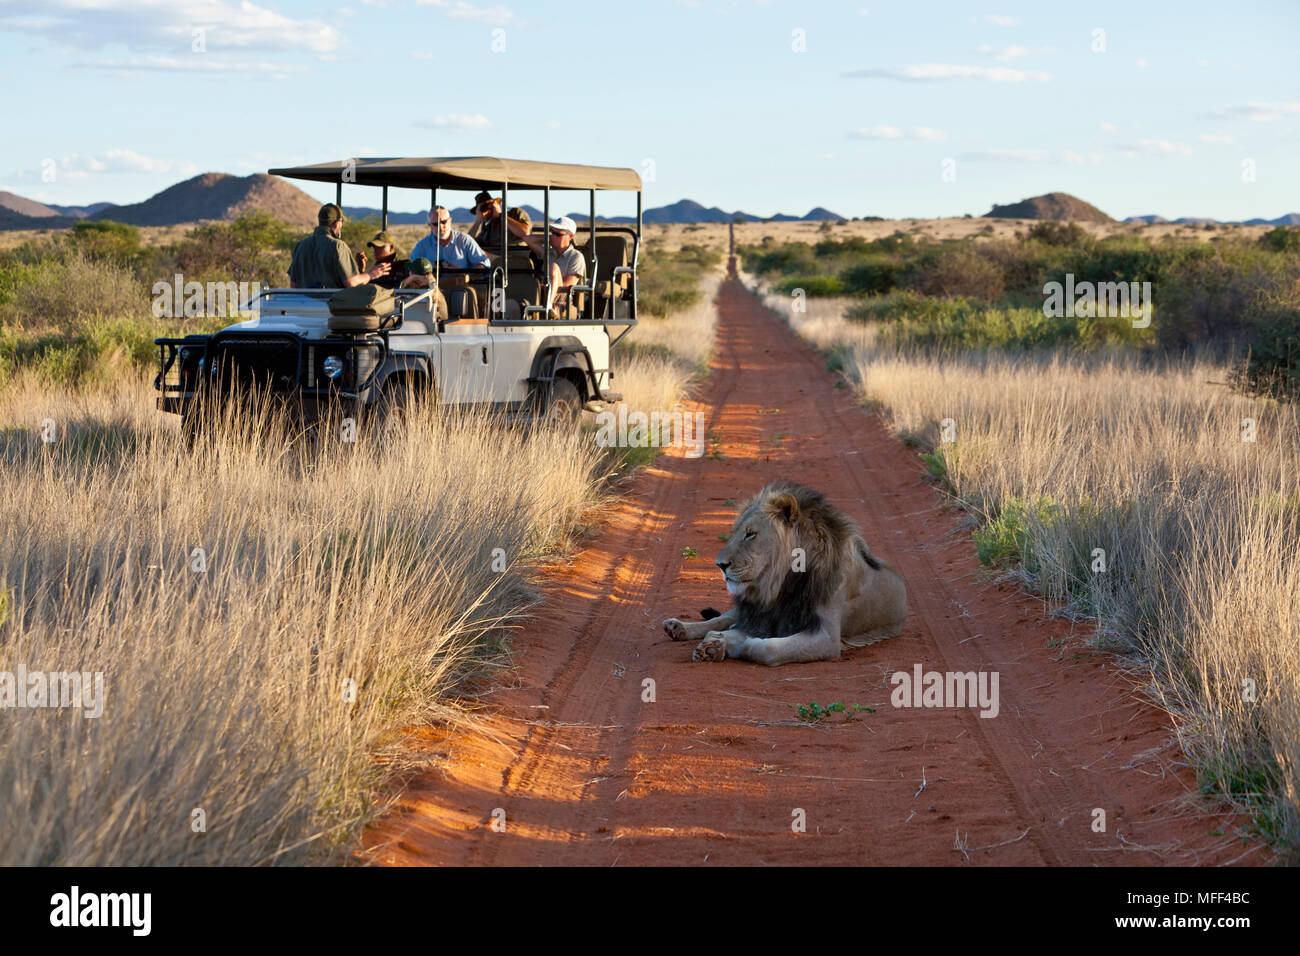 Les touristes dans un jeu à la conduite du véhicule à un homme lion mensonge la route dans le Kalahari. L'Afrique du Sud Banque D'Images